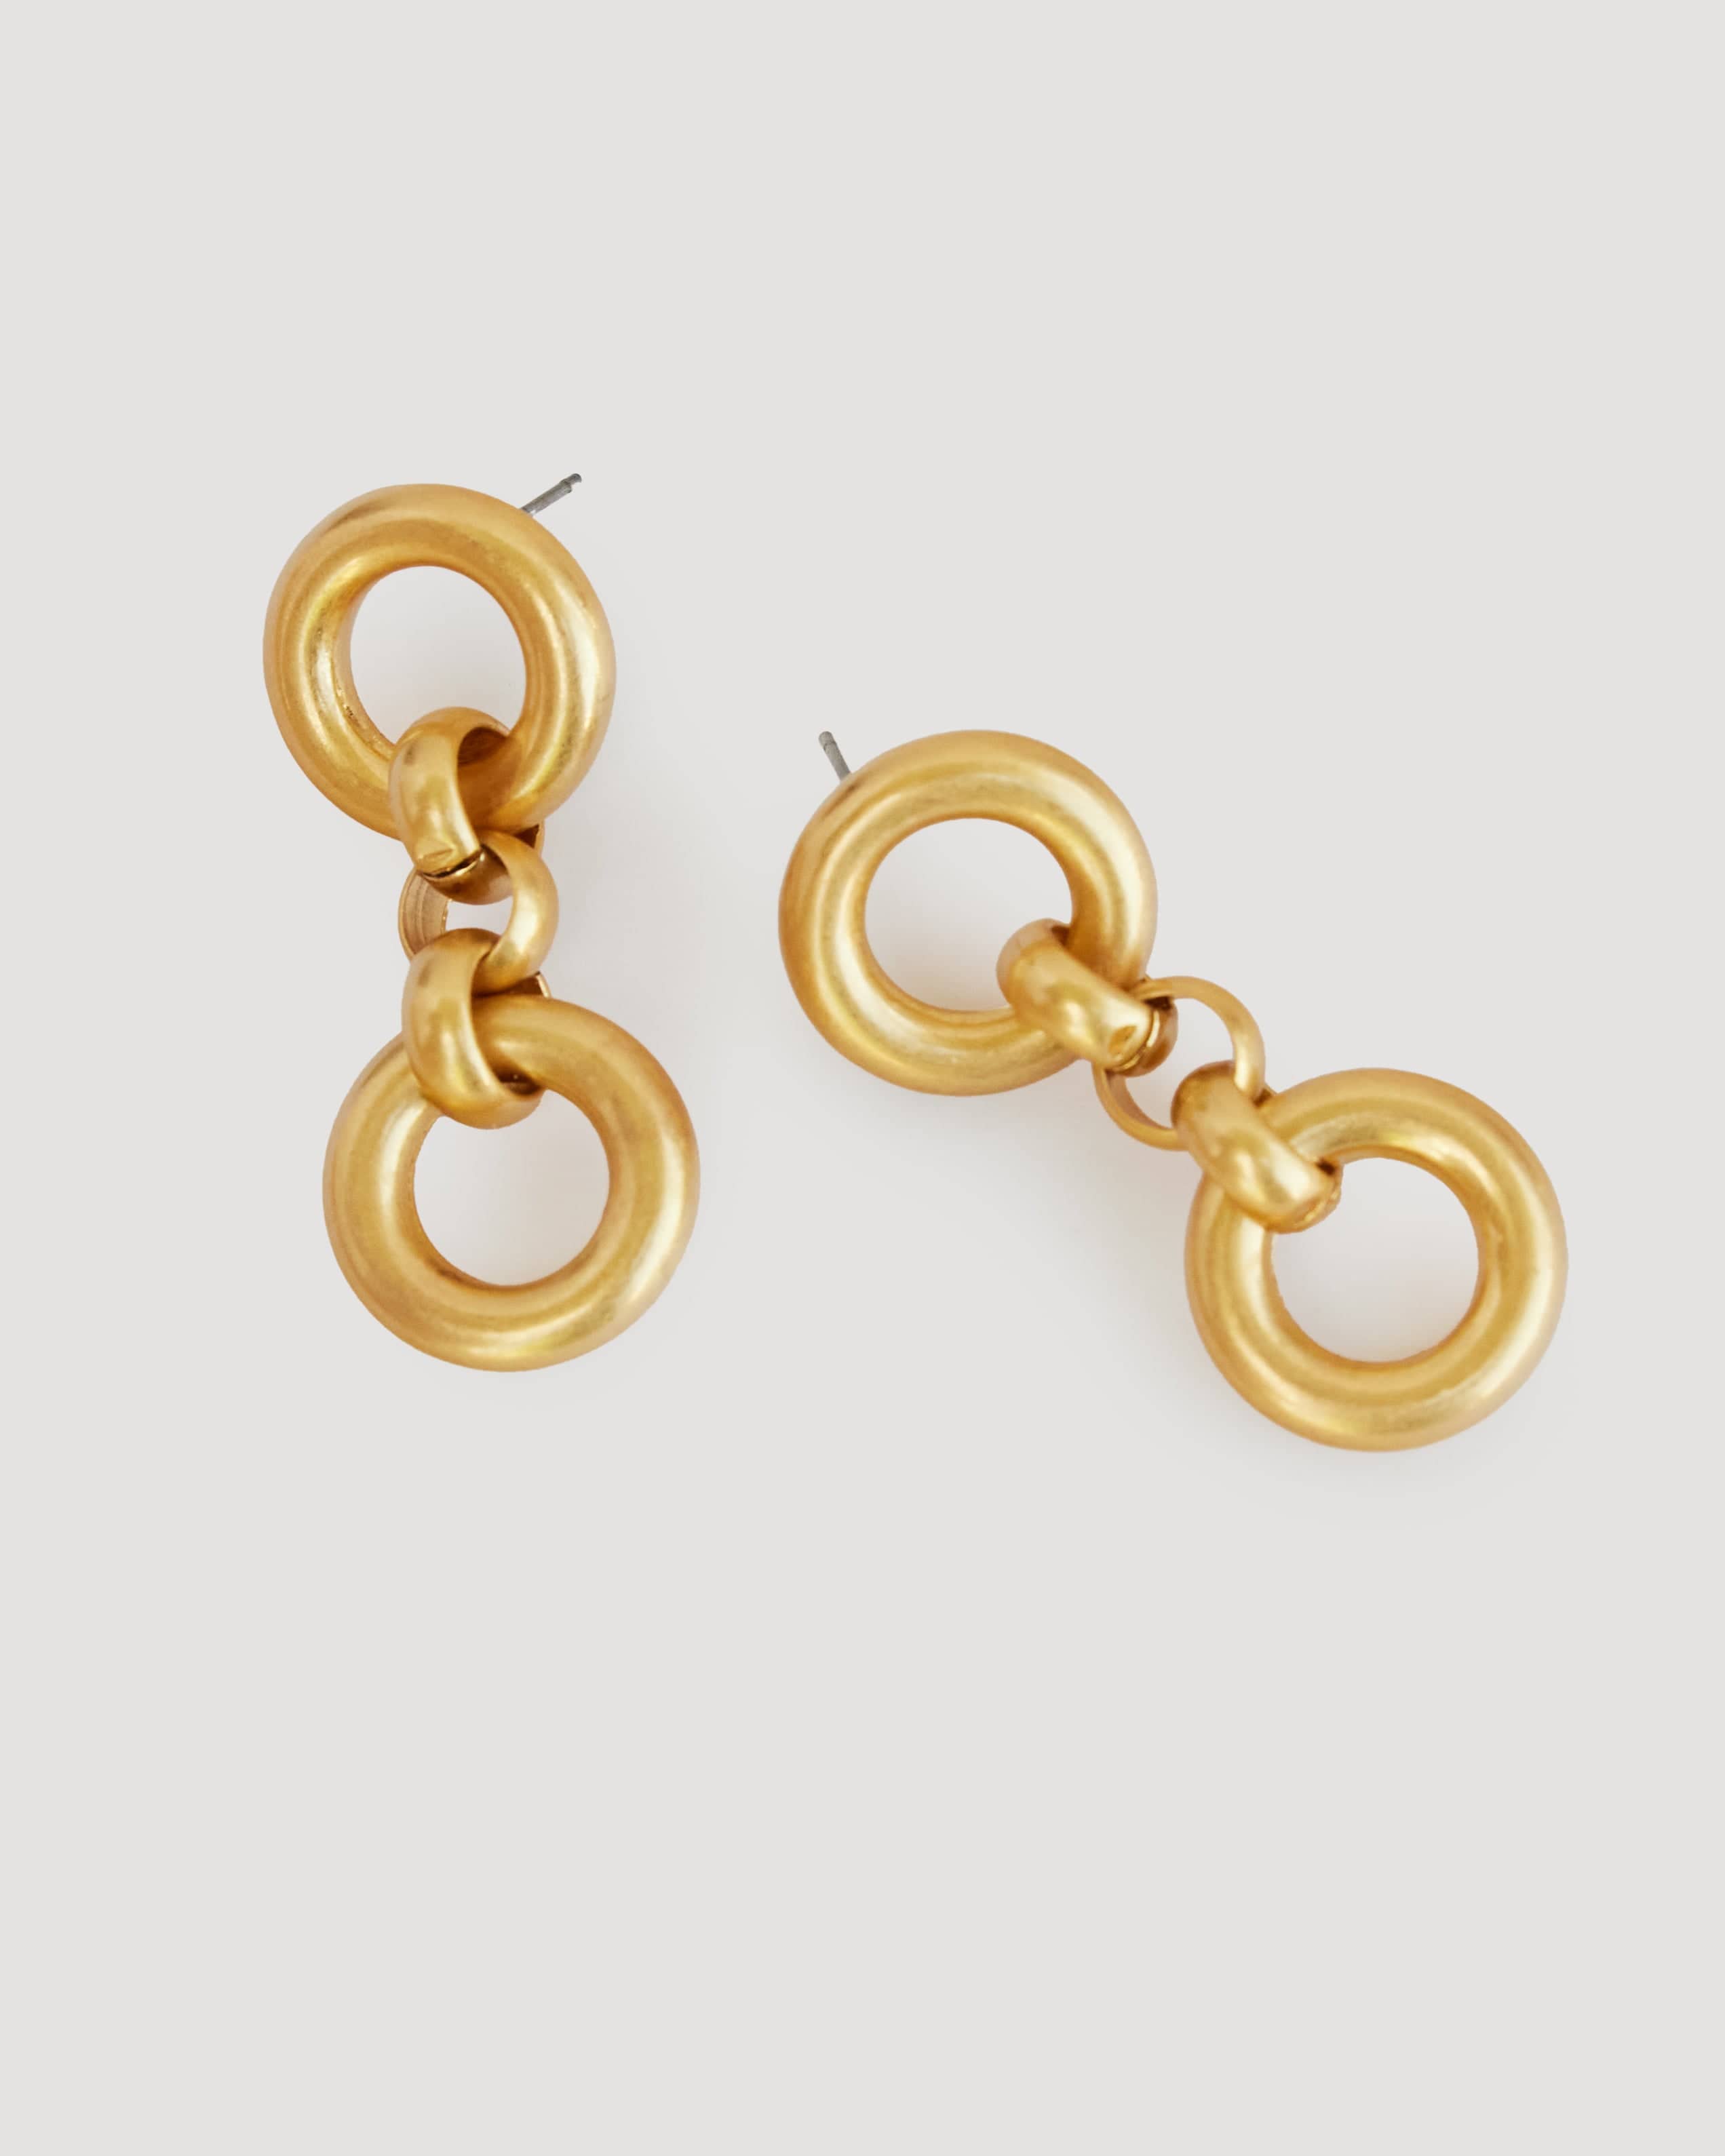 Gold ring earrings